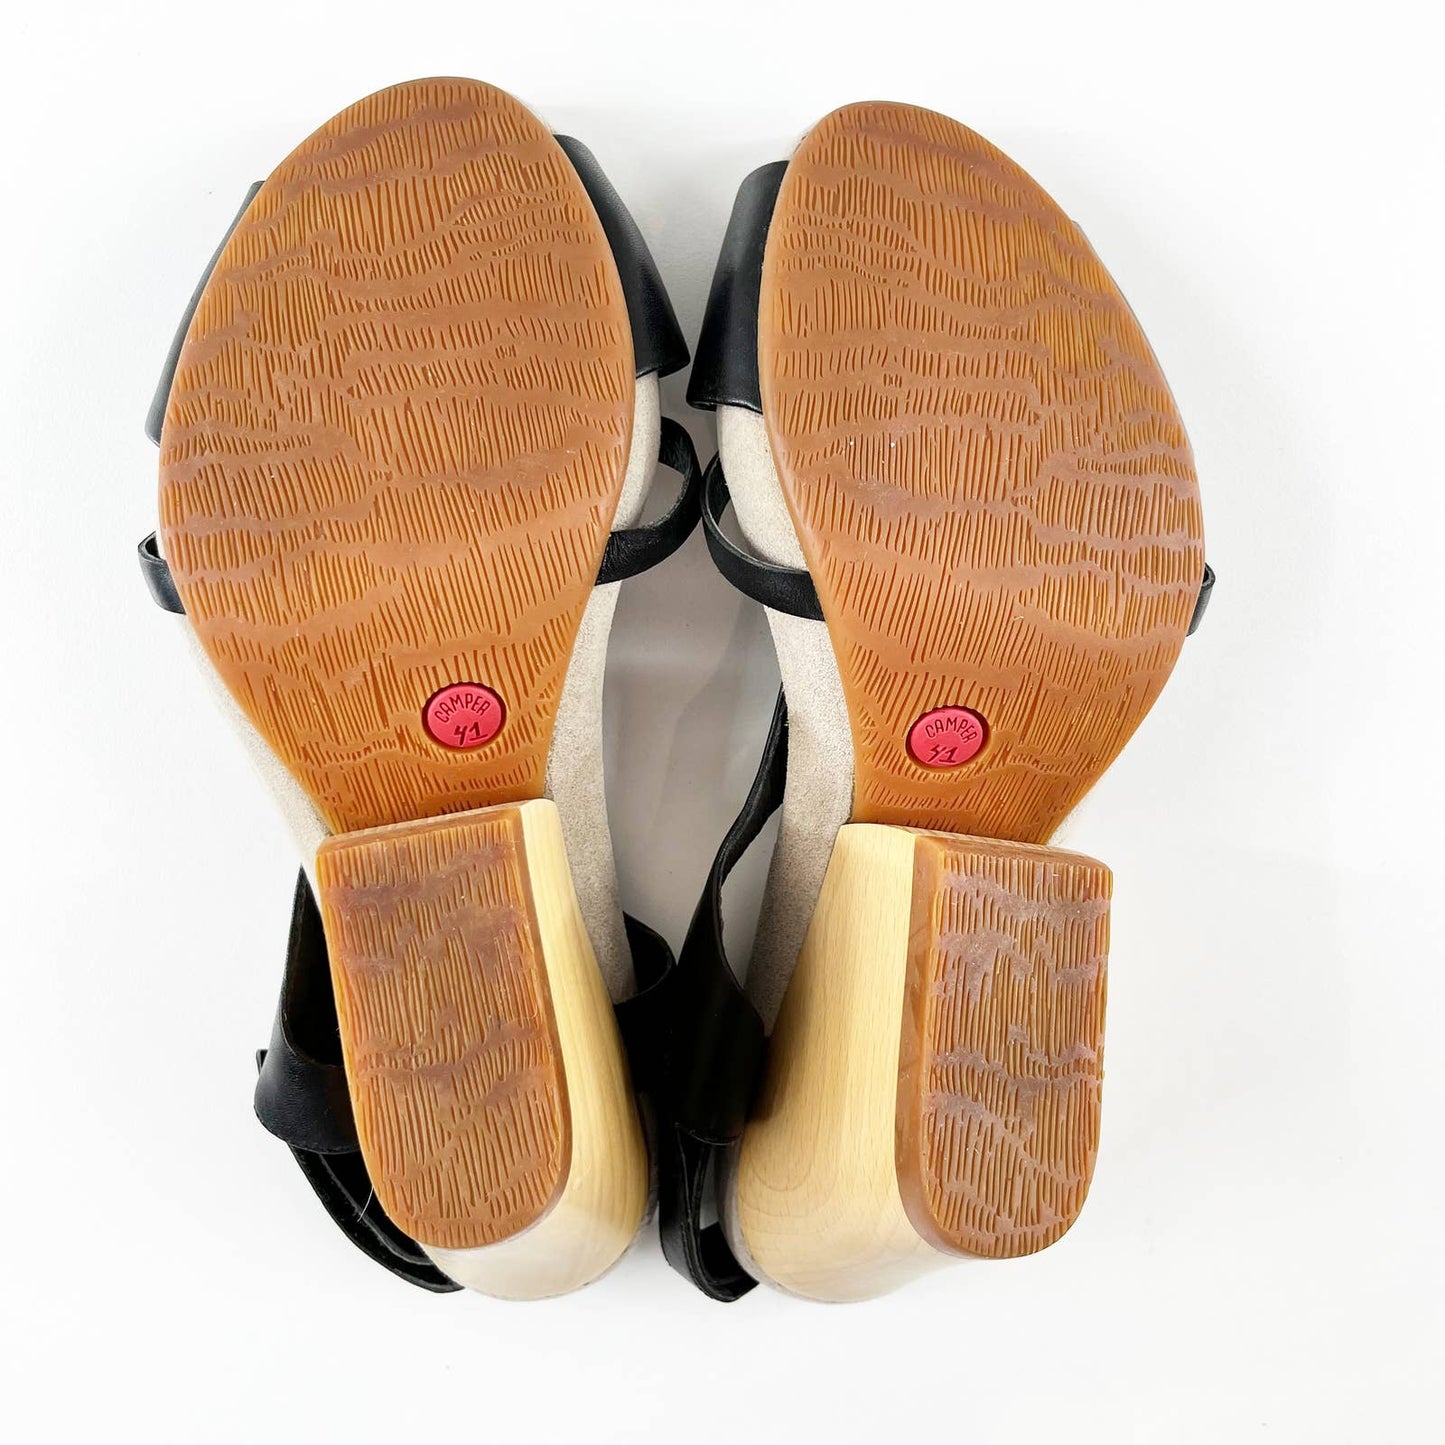 Camper Allegra Open Toe Strappy Wedge-Type Wood Block Heel Sandals Black 41